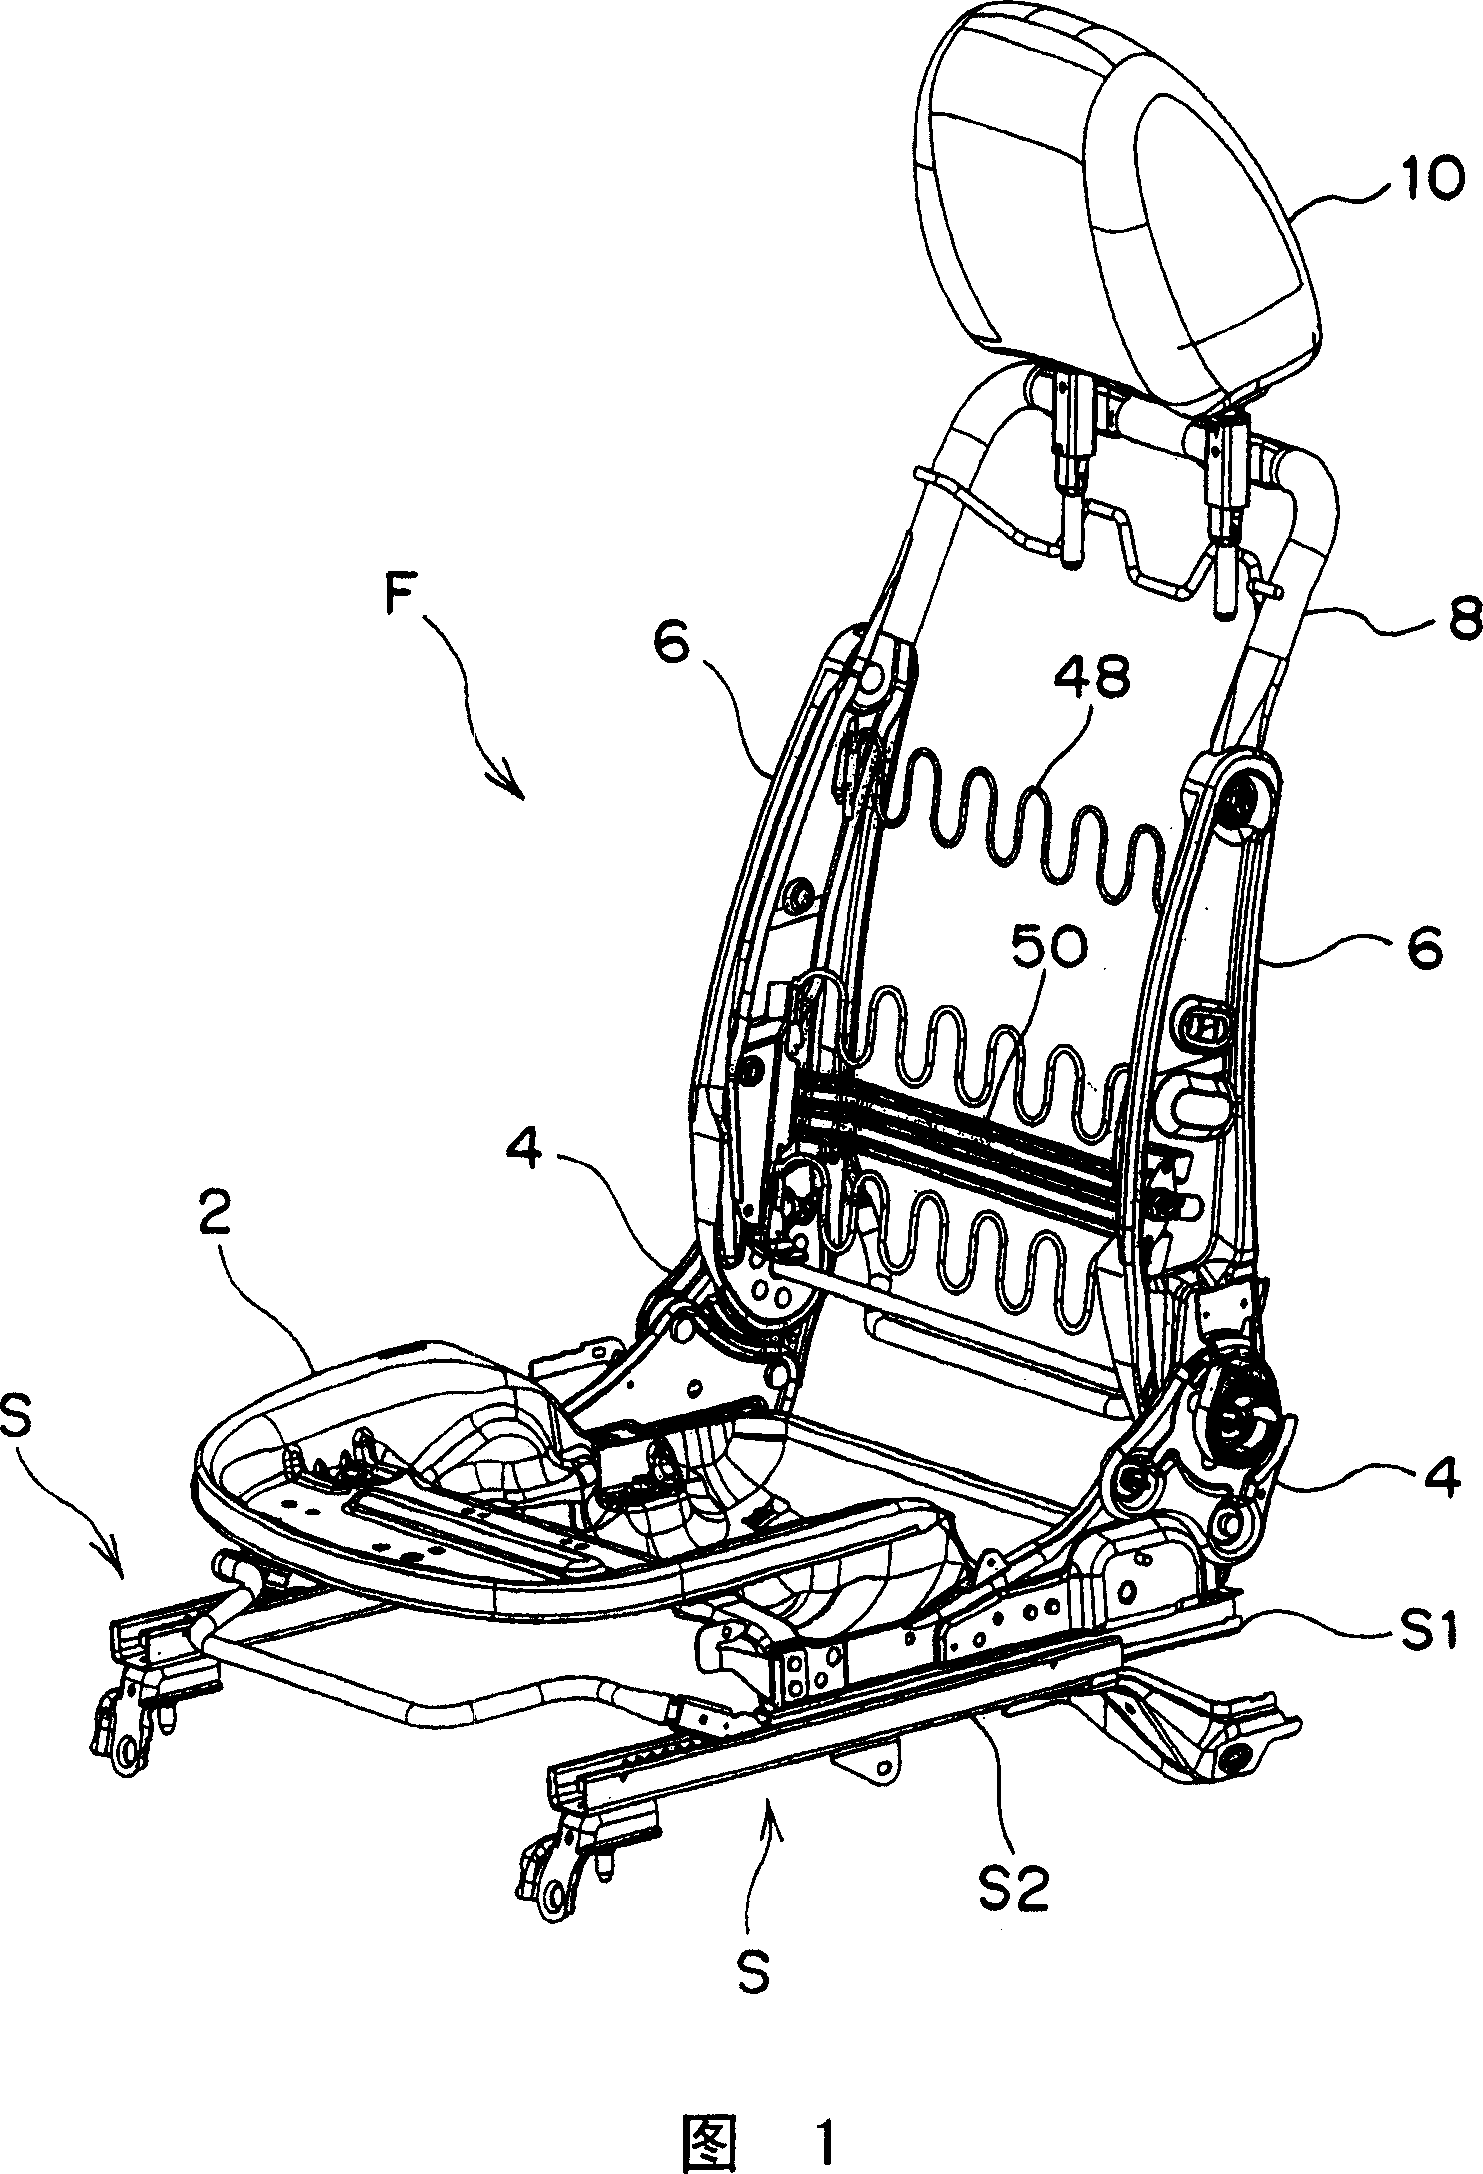 Automobile seat